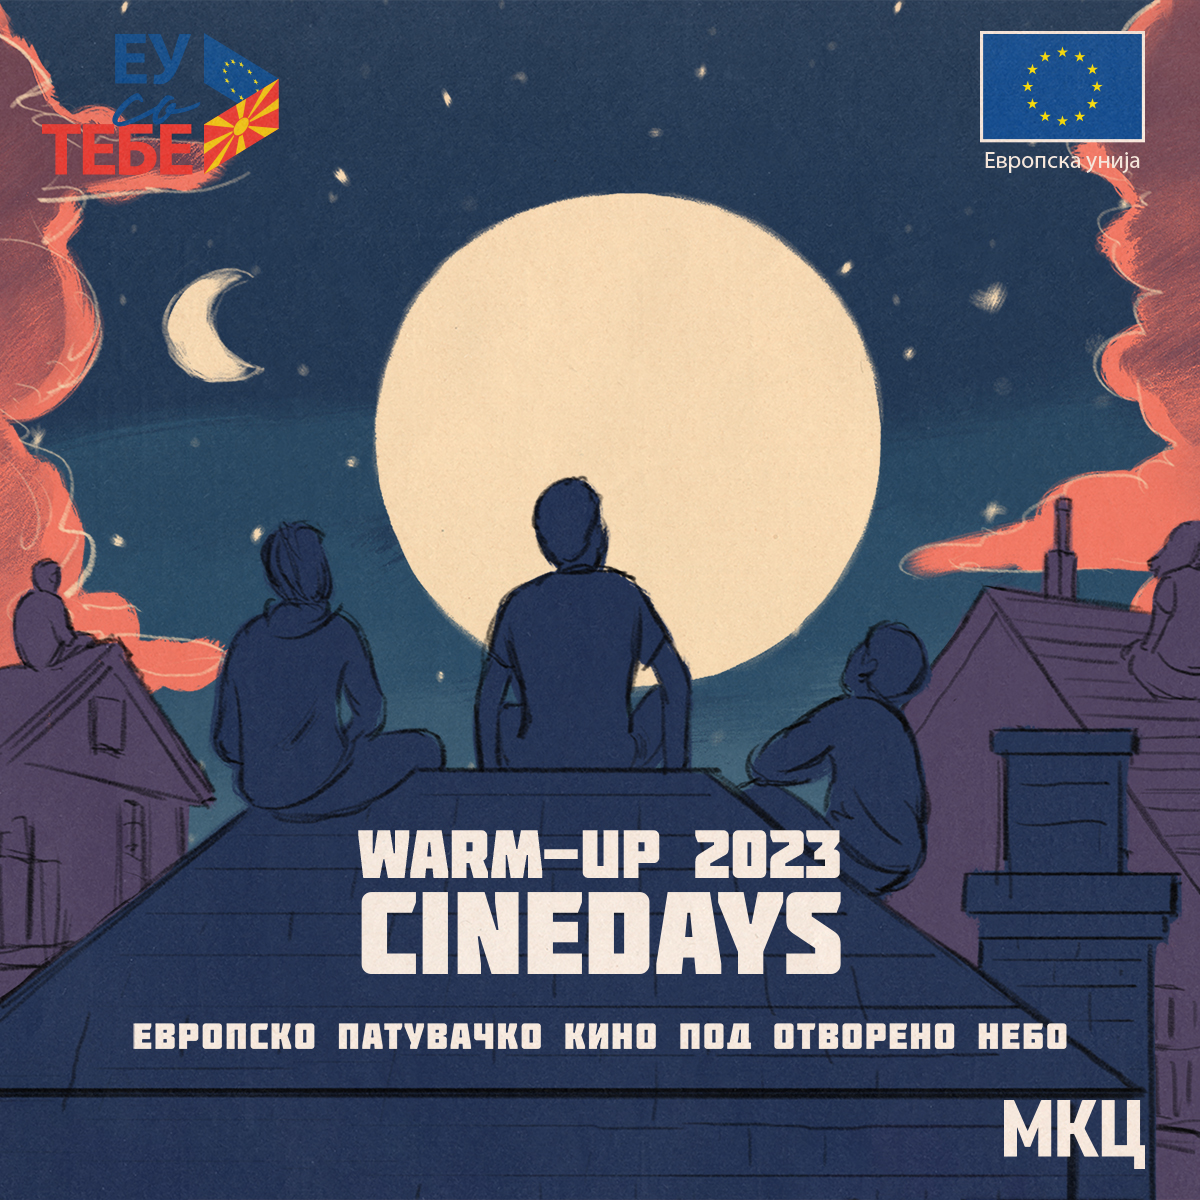 Warm-up Cinedays 2023